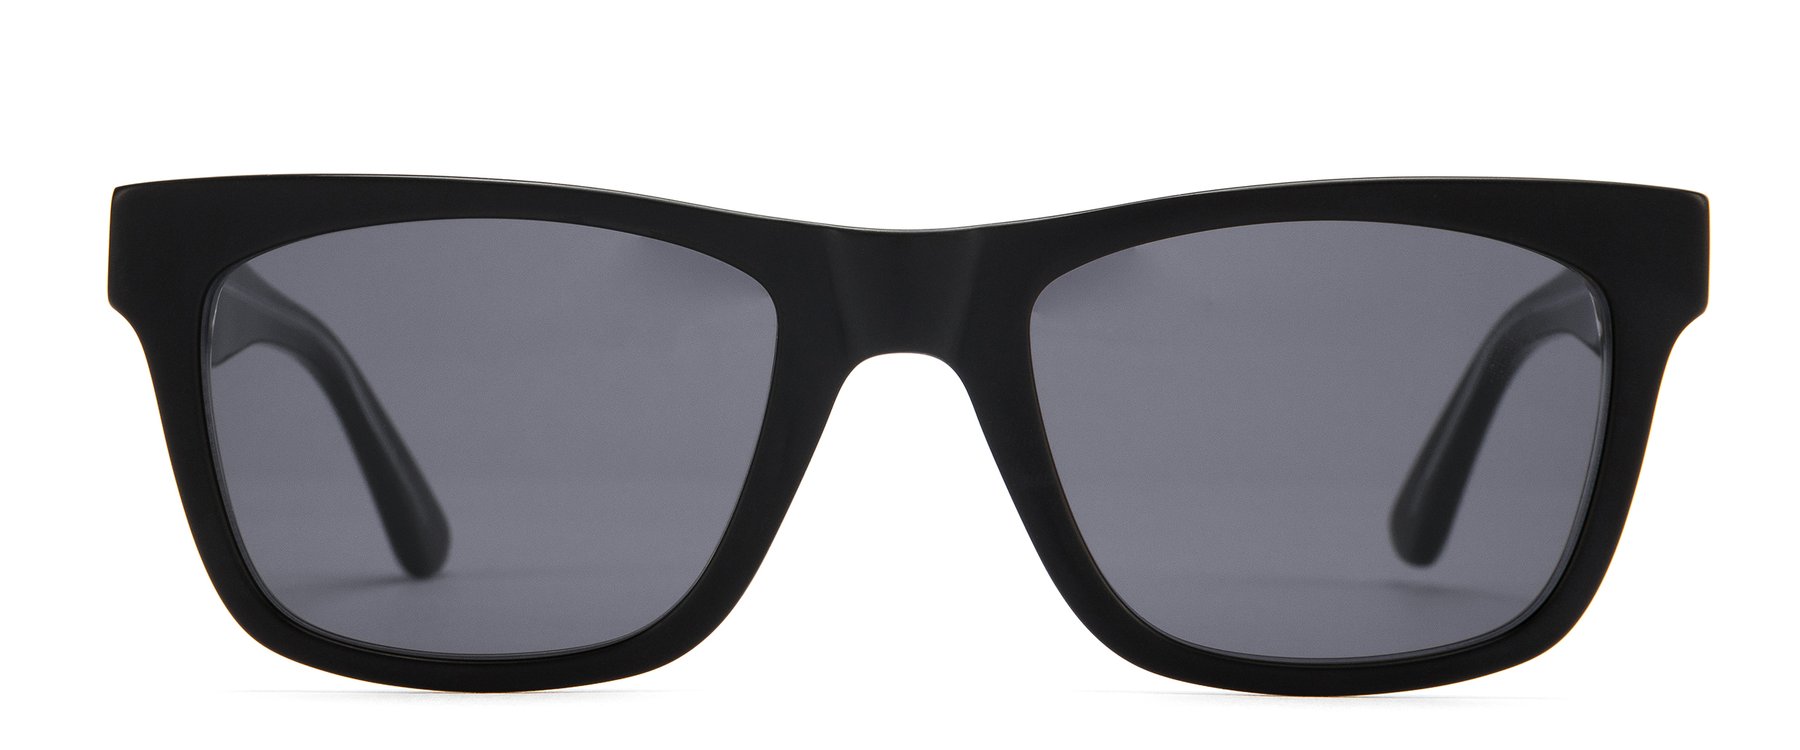 Otis Hawton Polarized Sunglasses Matte Black Grey Square